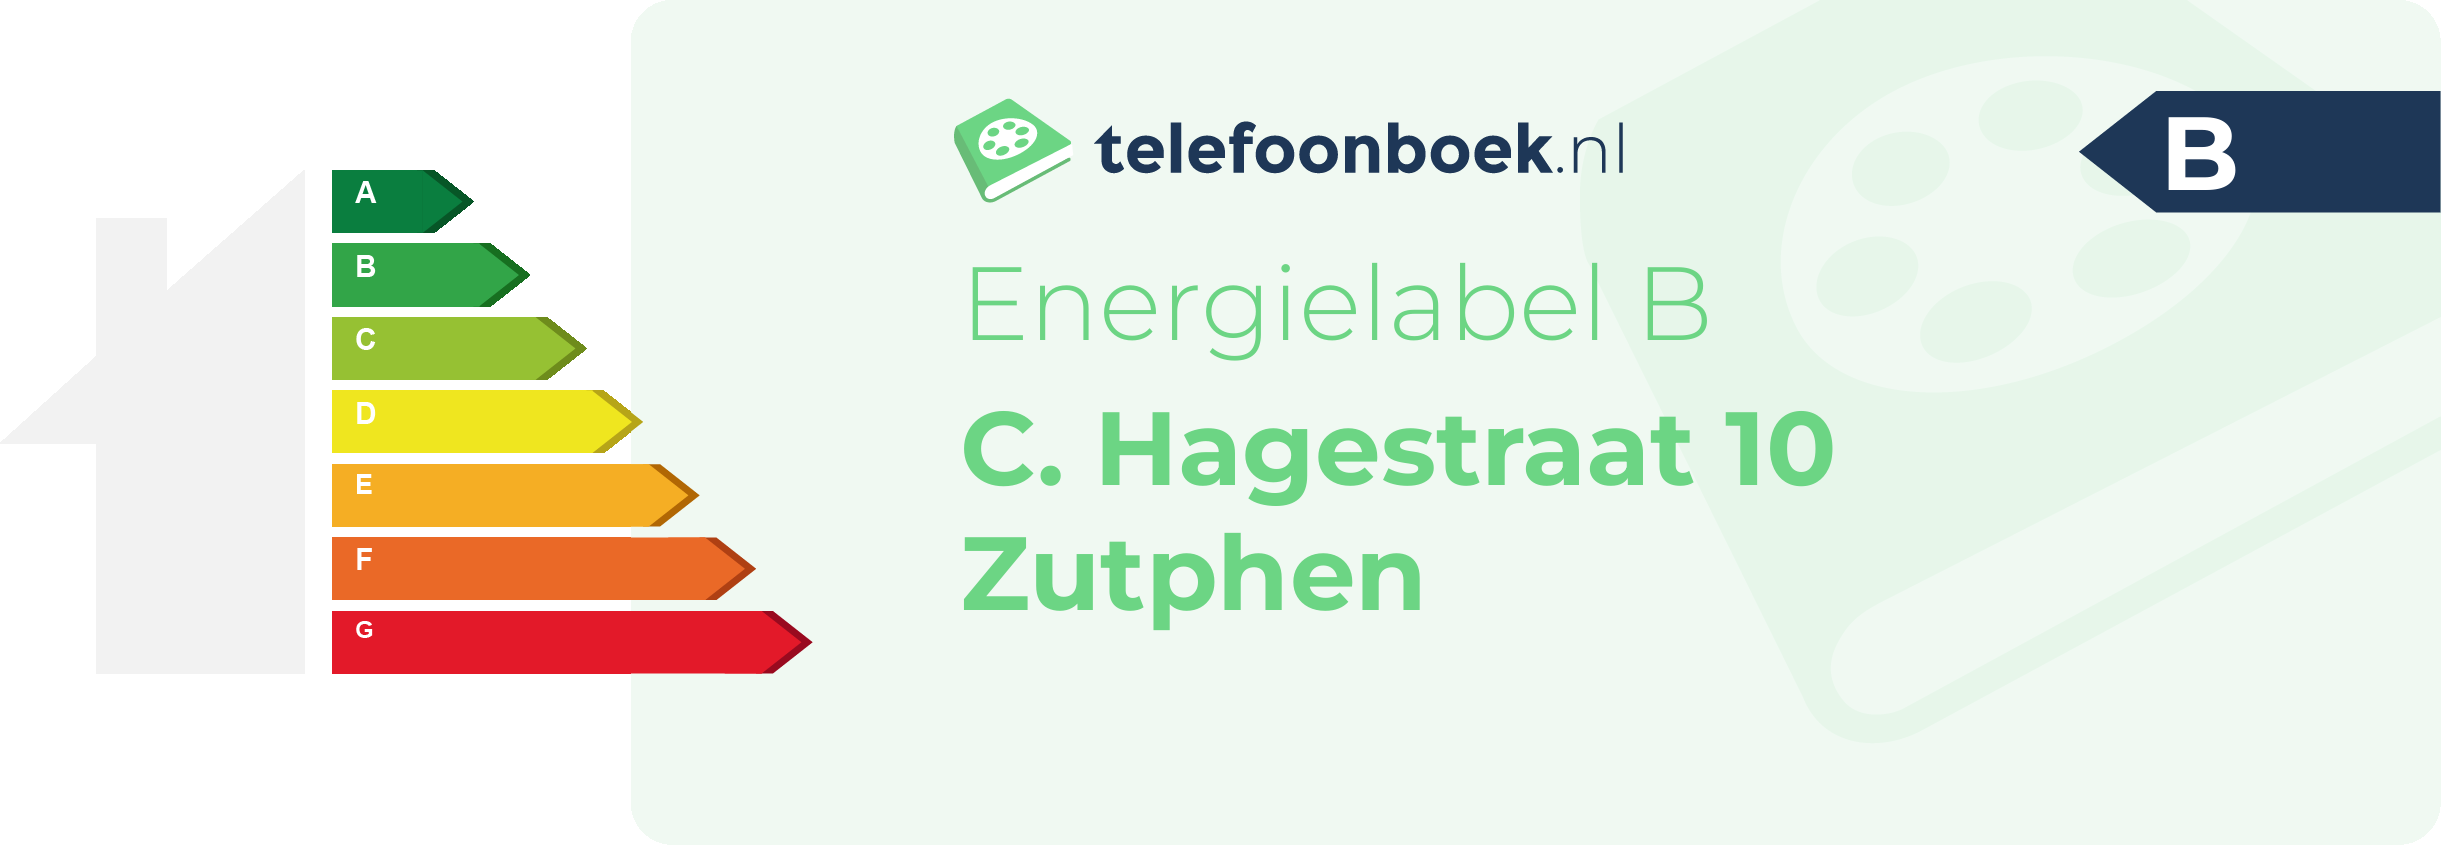 Energielabel C. Hagestraat 10 Zutphen